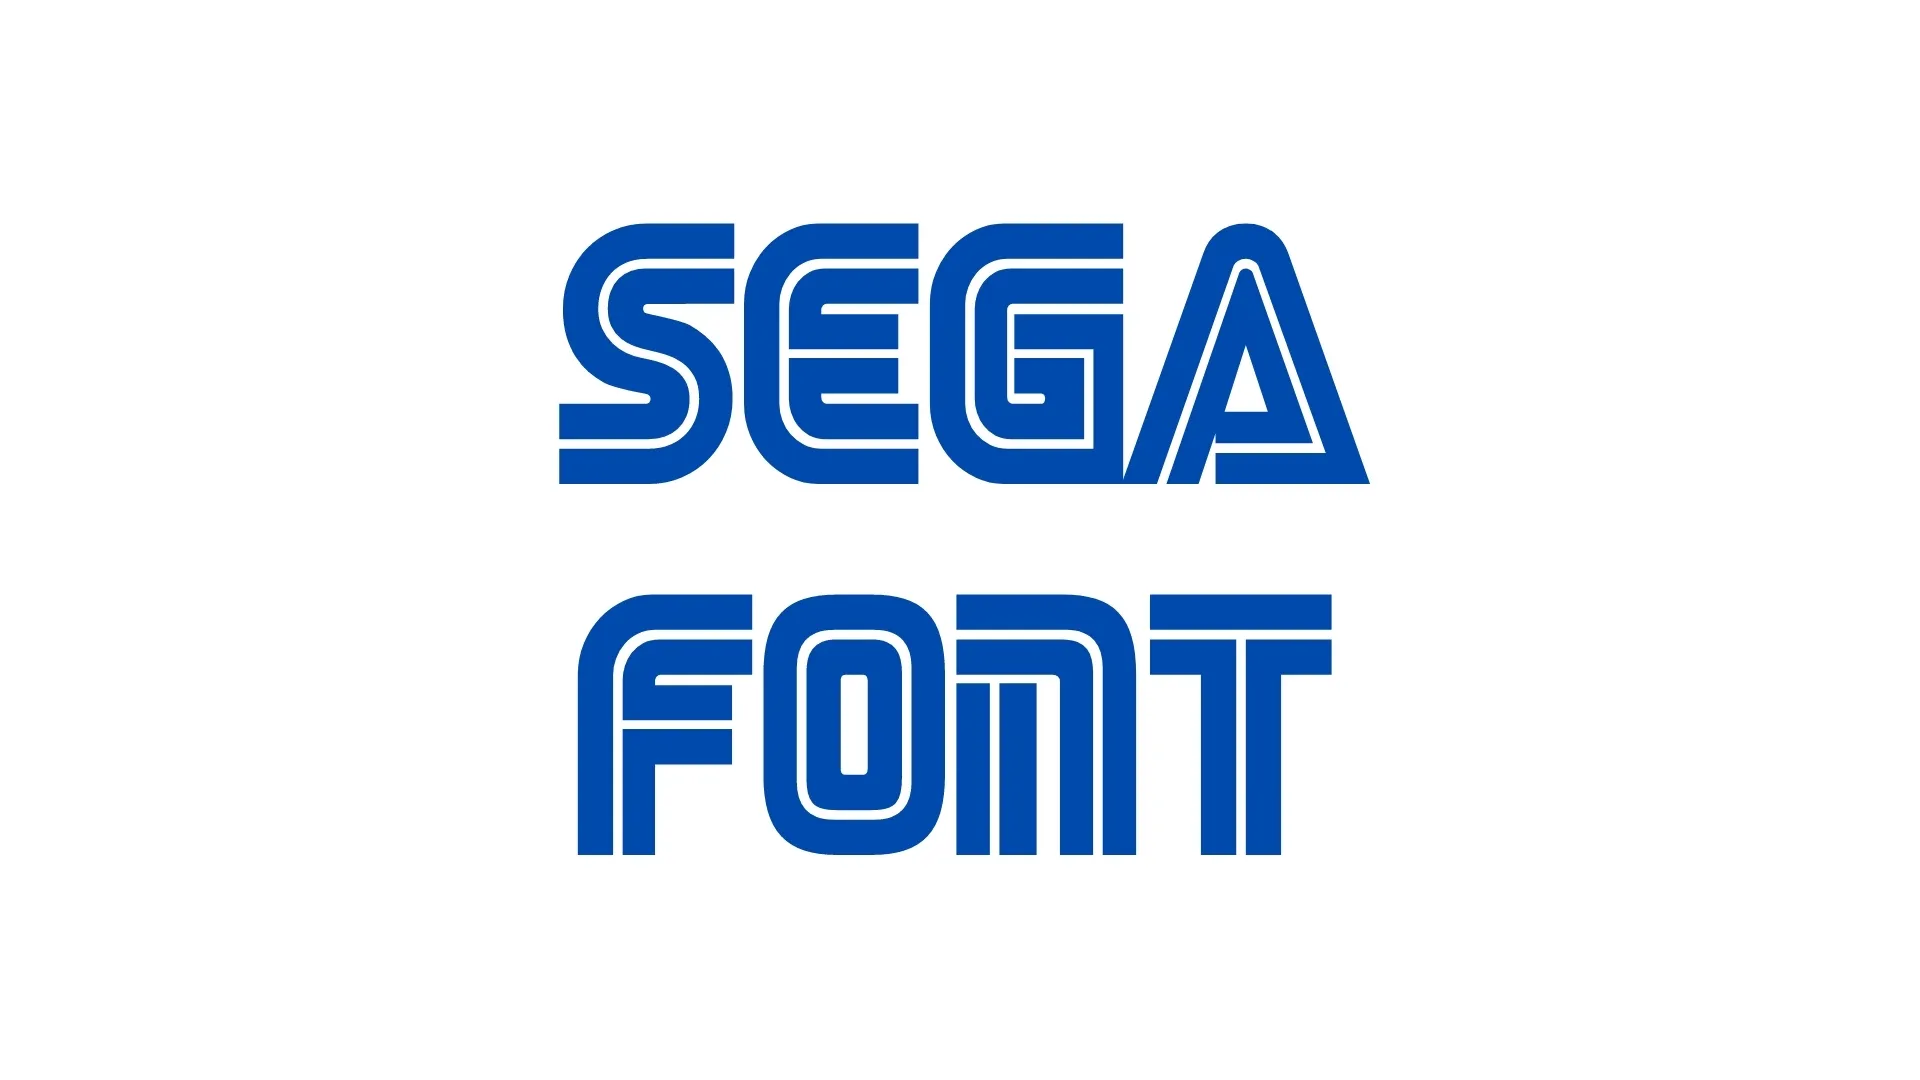 Sega Font